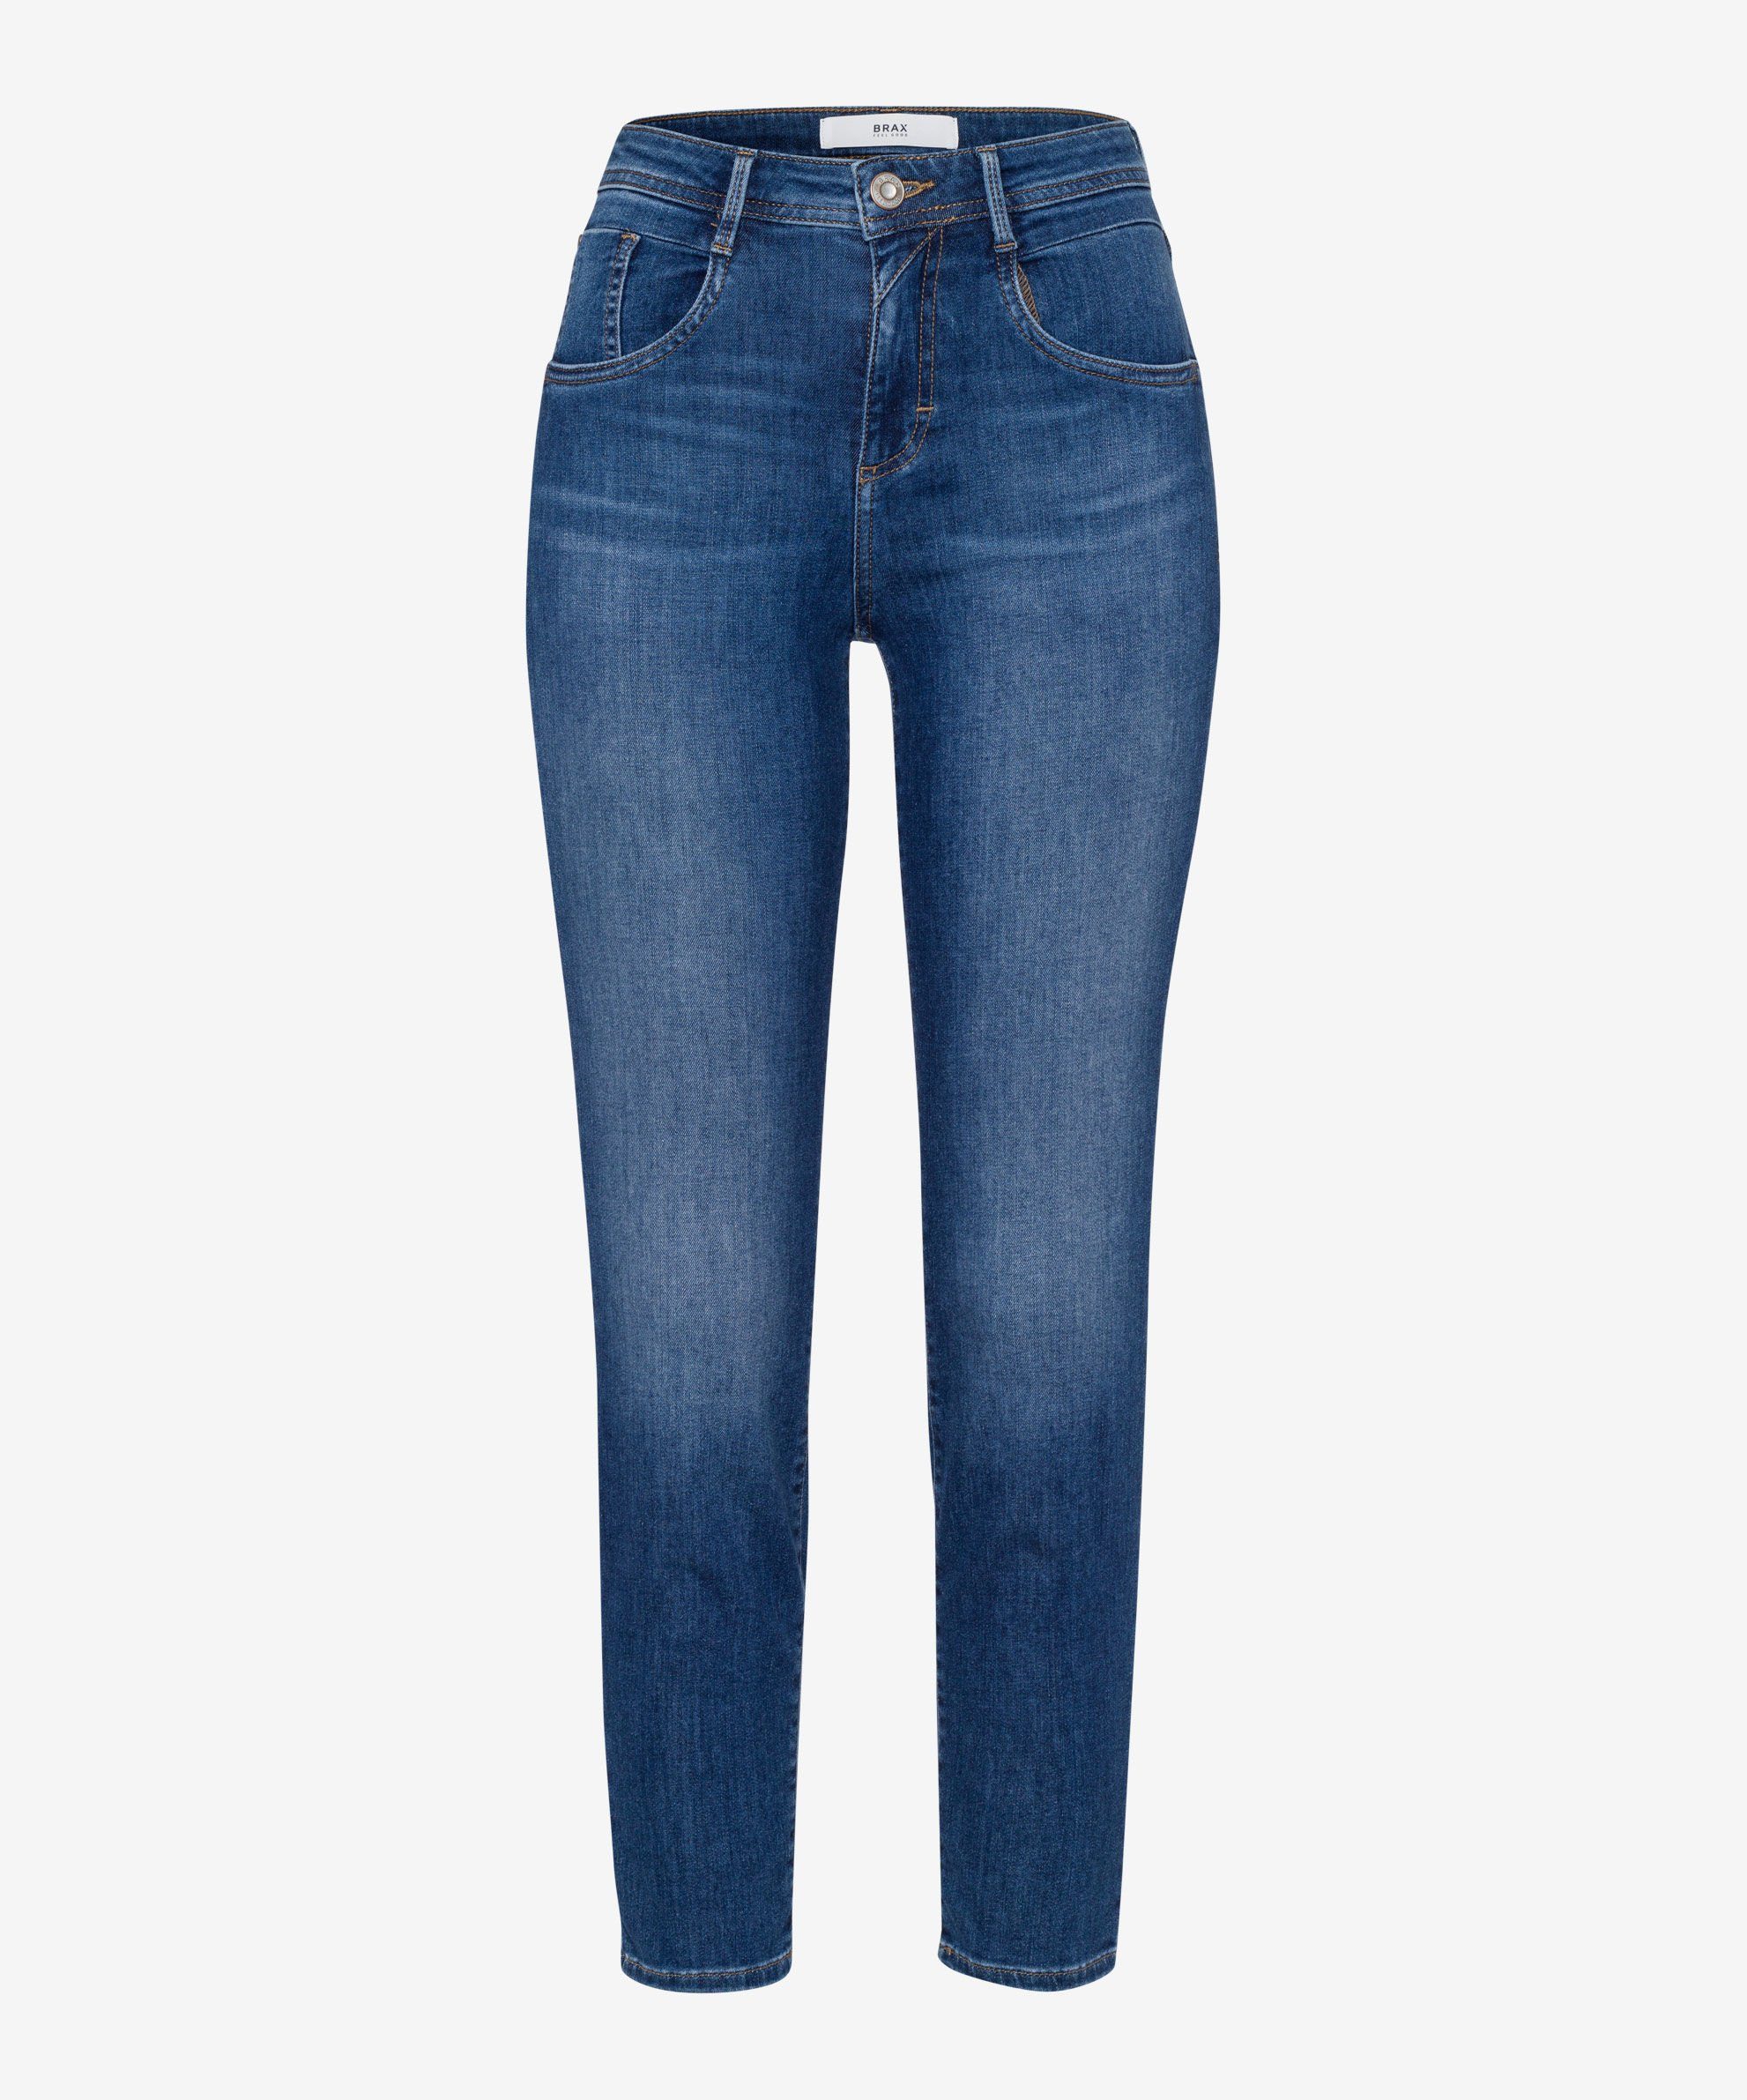 Brax Skinny-fit-Jeans Five-Pocket-Röhrenjeans used regular blue